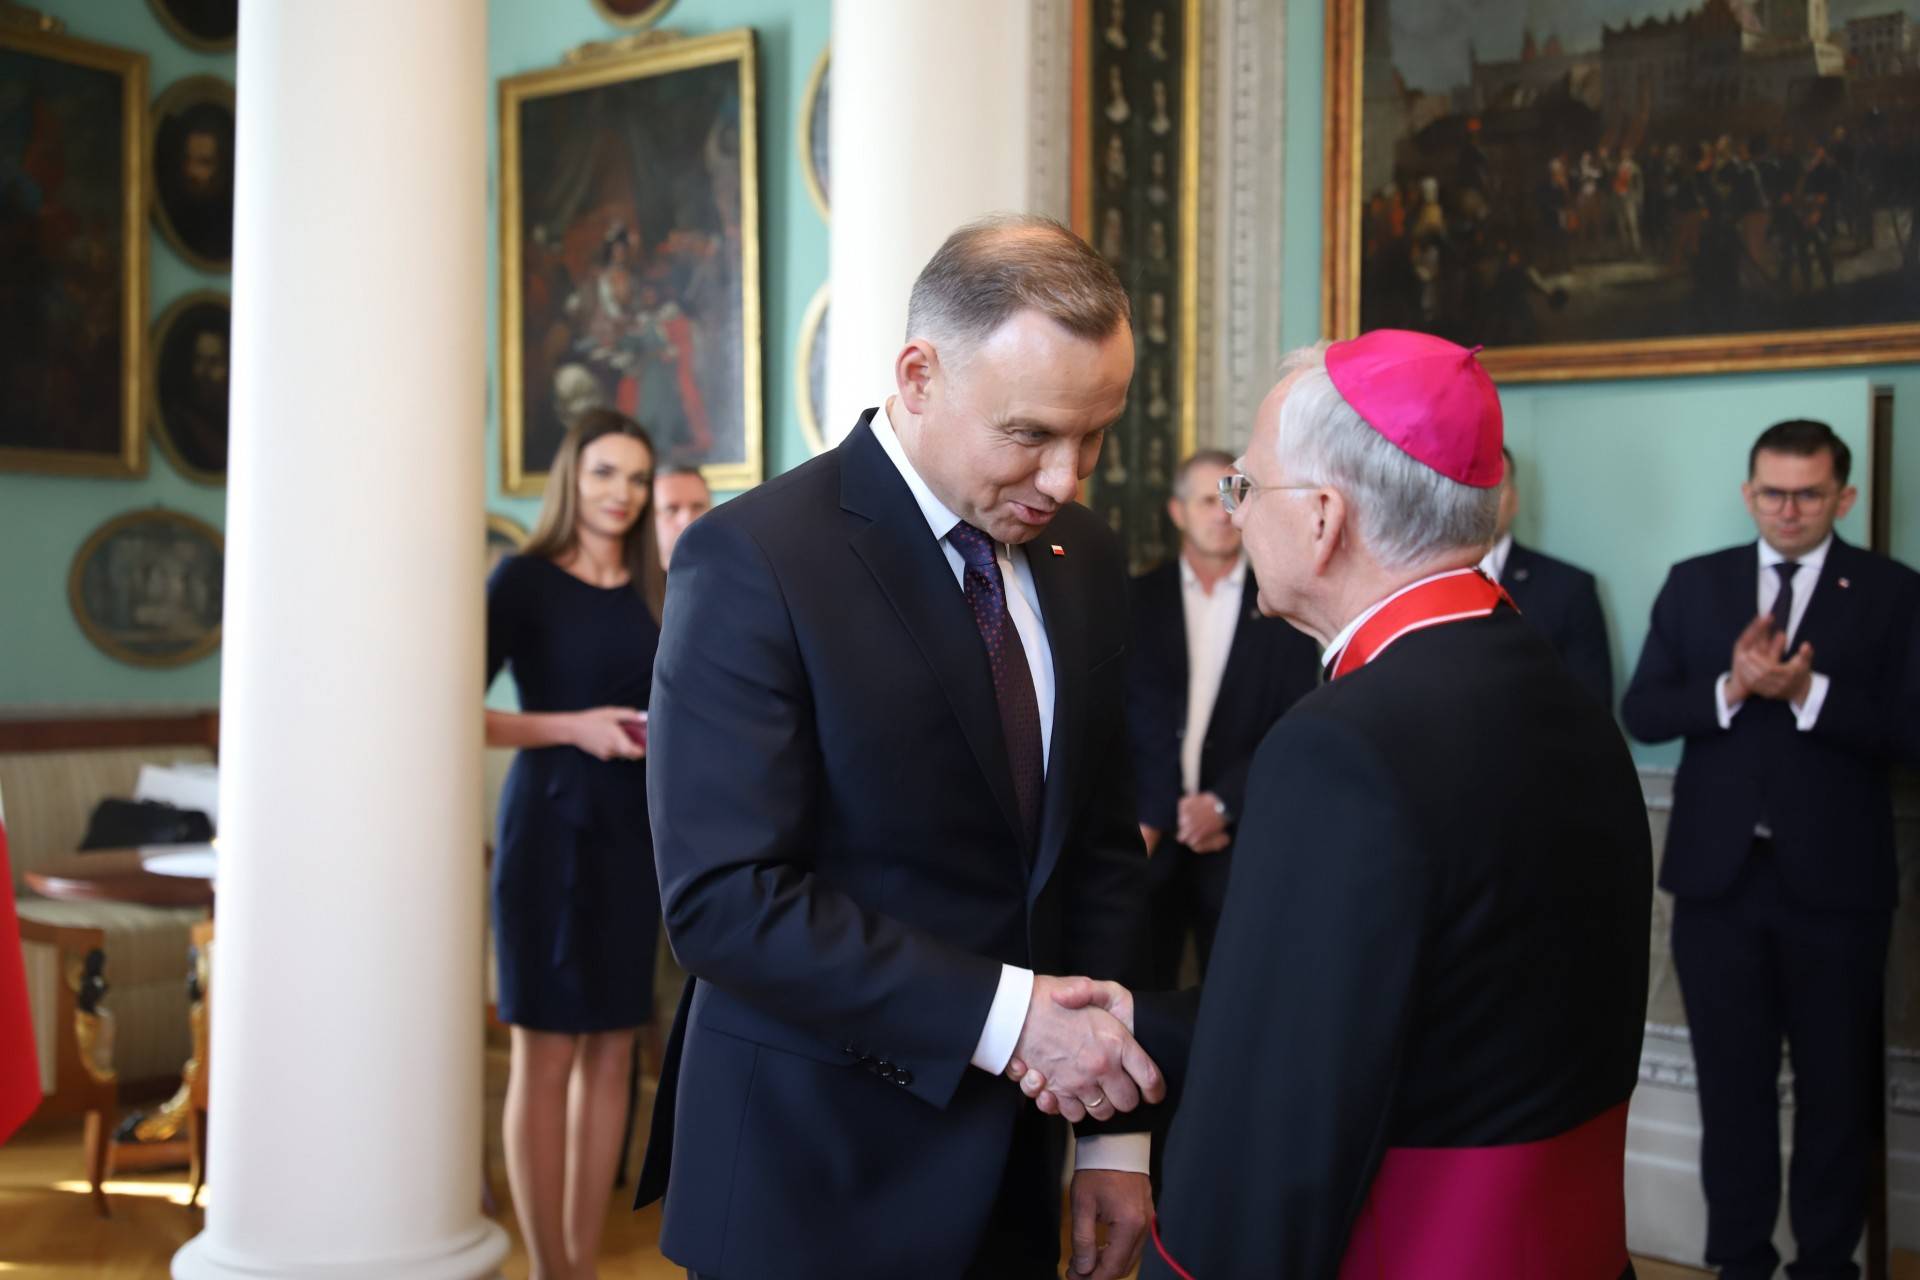 Prezydent Duda odznaczył abpa Jędraszewskiego. "Sojusz ołtarza z PiS"